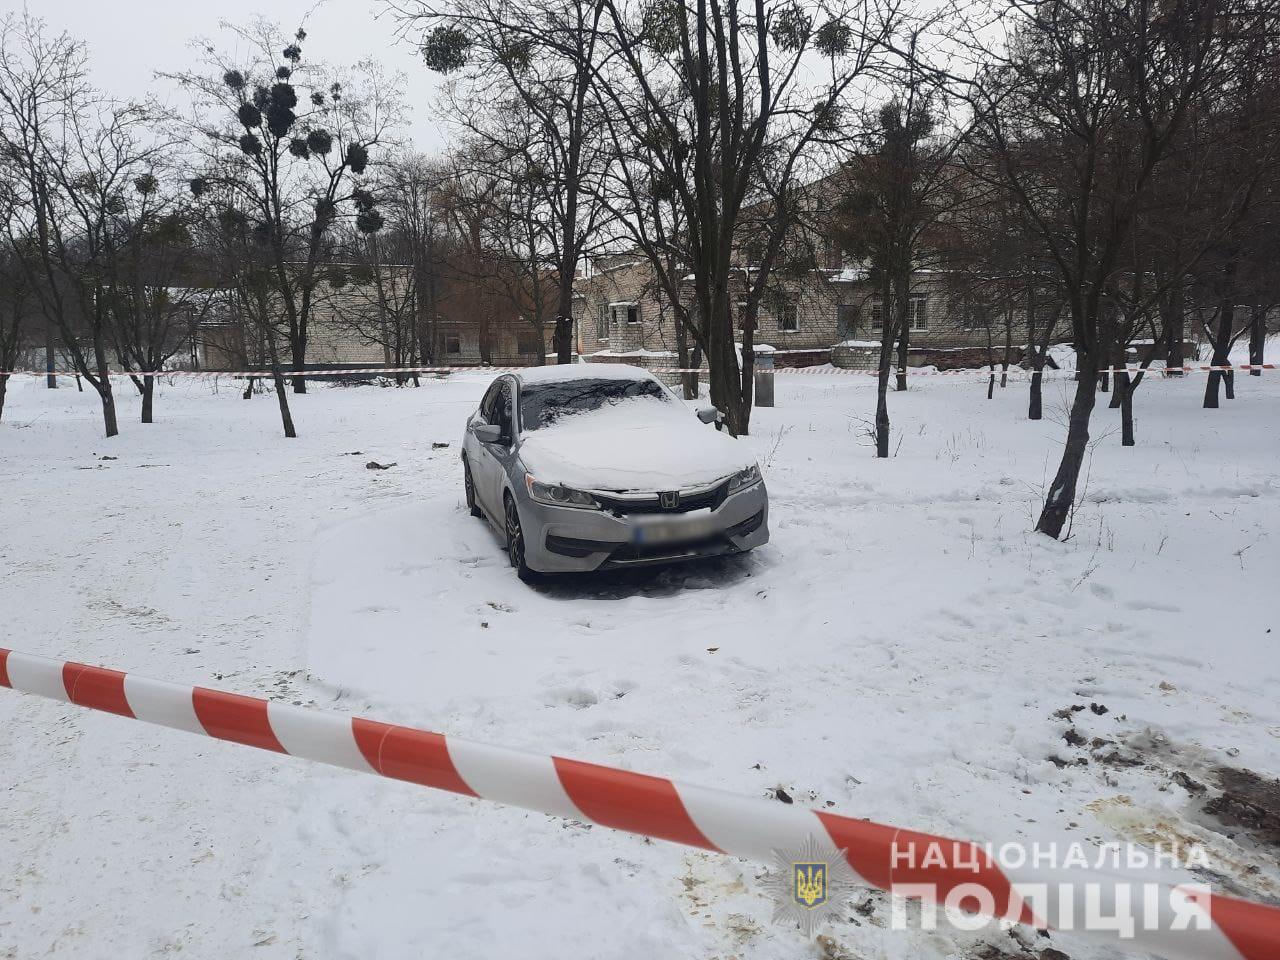 Криминал Харьков: Найден убитым в своей Honda Accord пропавший без вести 39-летний Степан Исаков